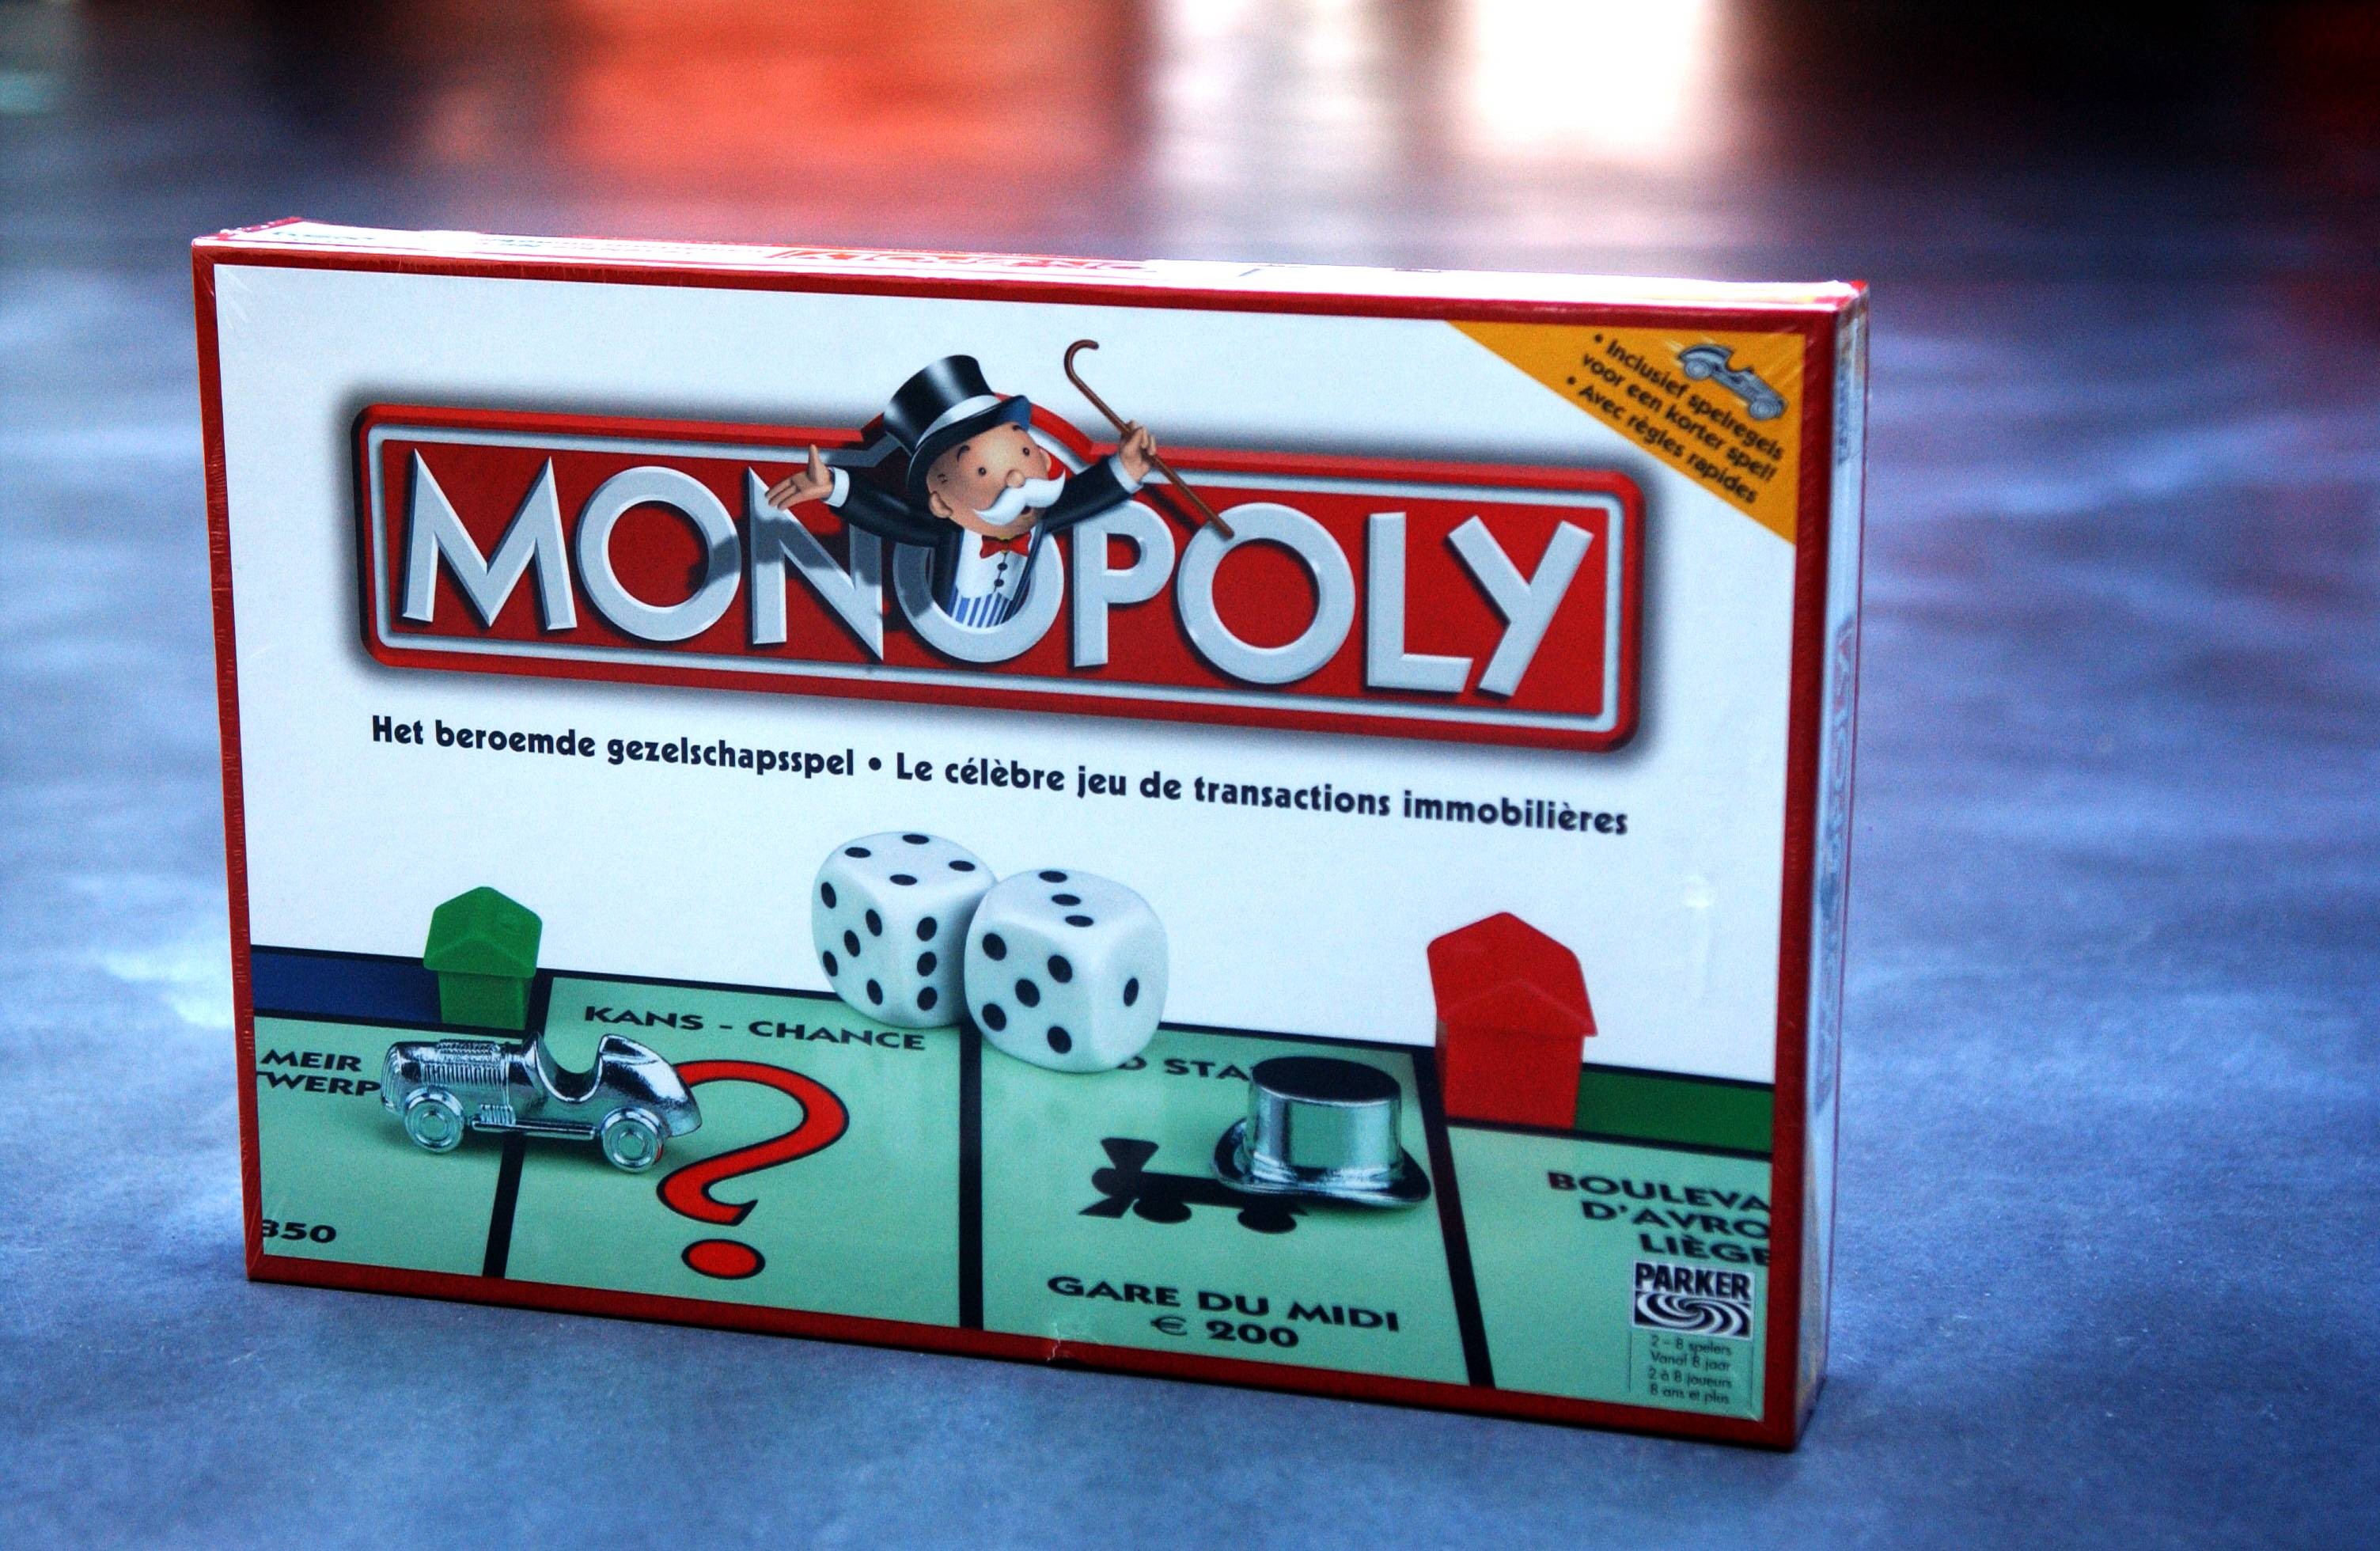 ② Monopoly Fortnite — Jeux de société